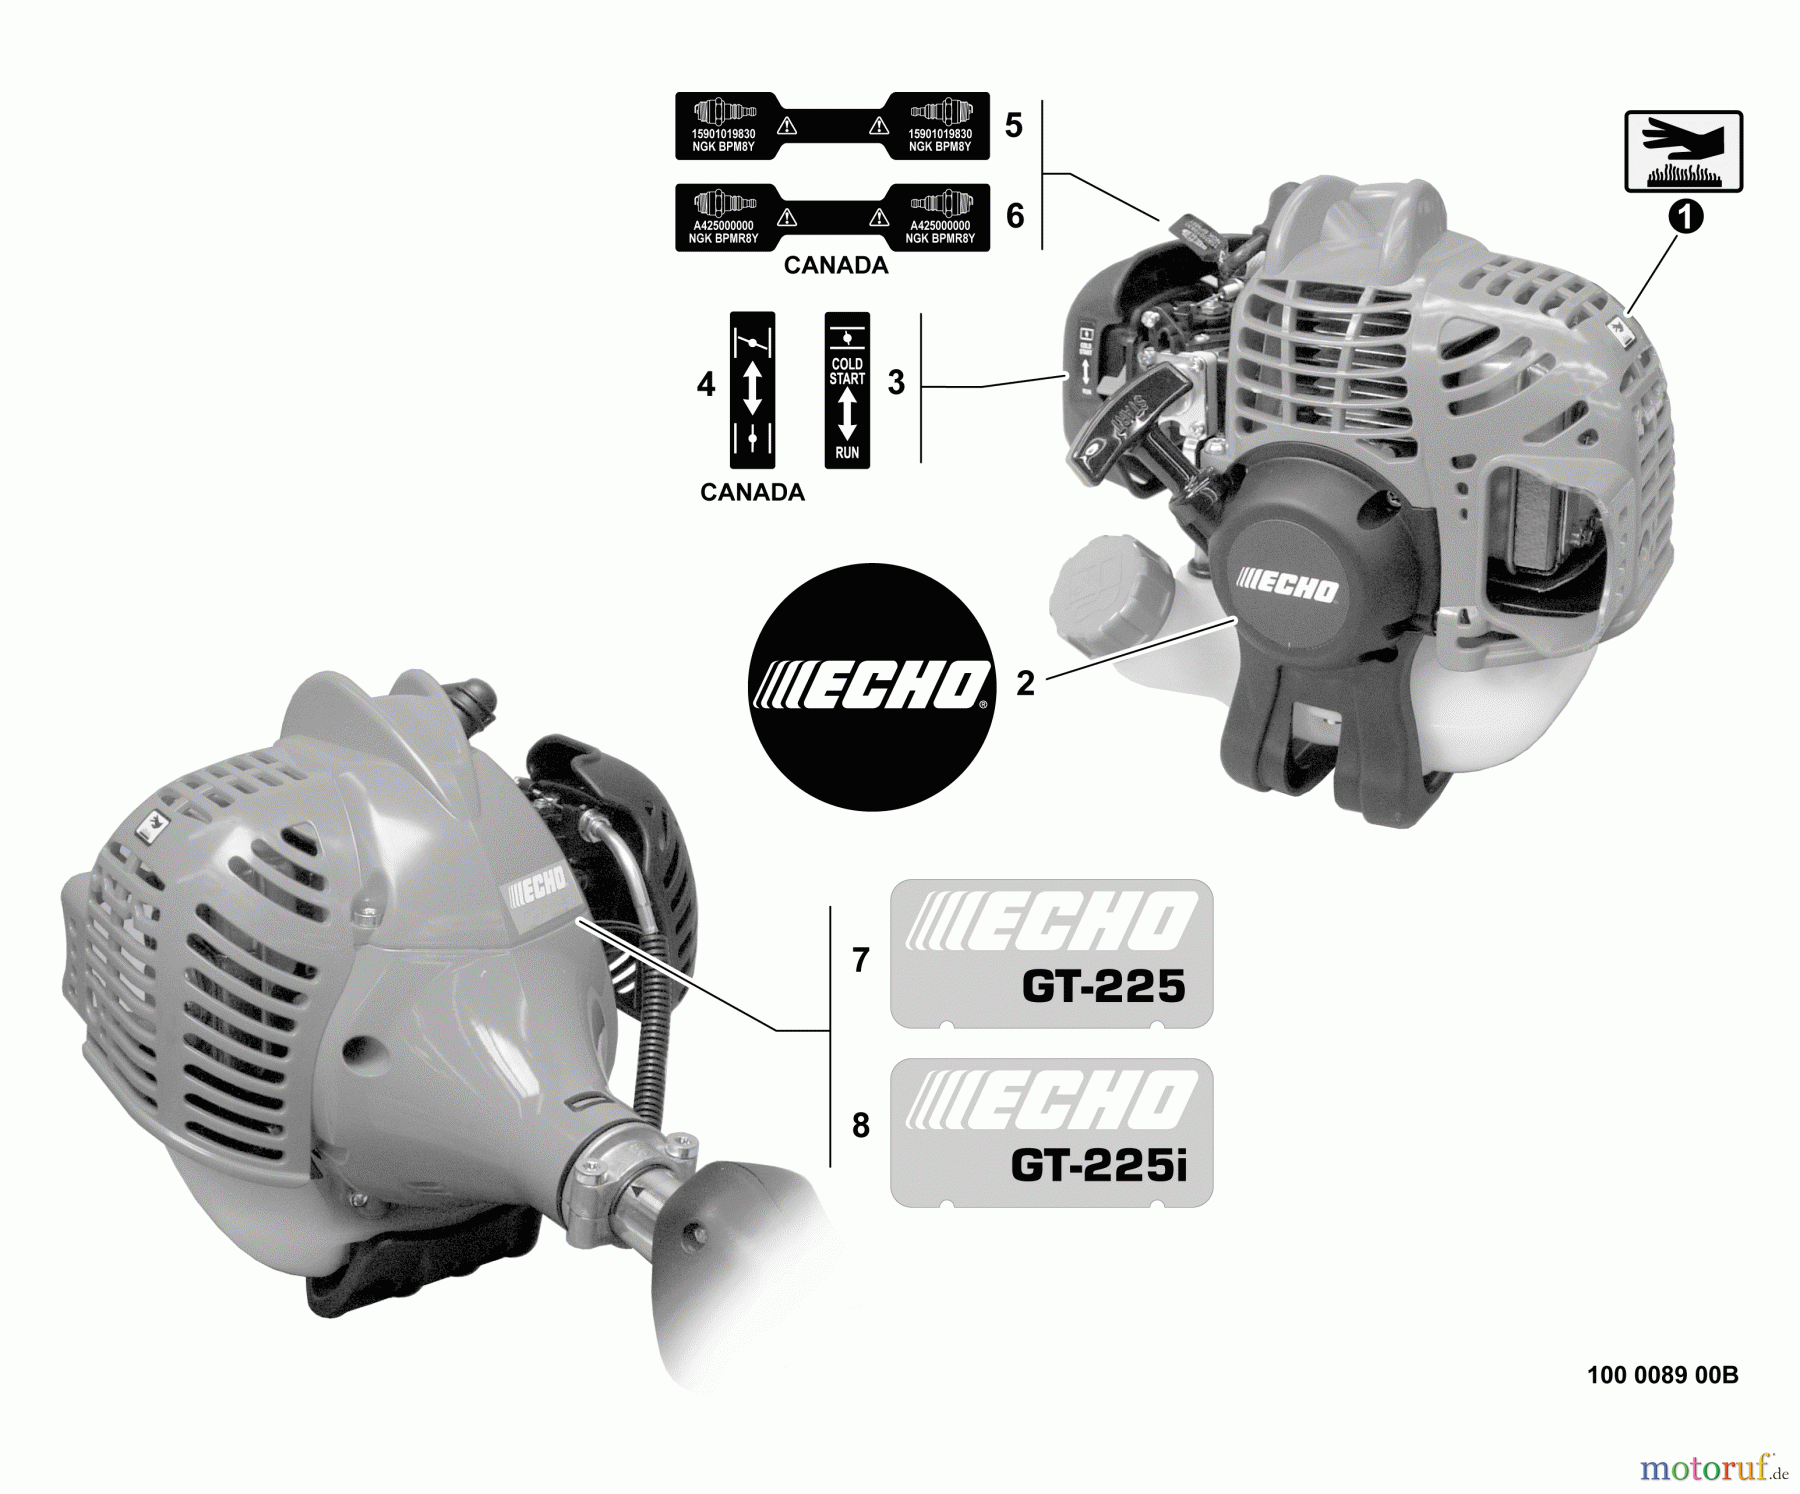  Echo Trimmer, Faden / Bürste GT-225 - Echo String Trimmer, S/N:S09911001001 - S09911999999 Labels